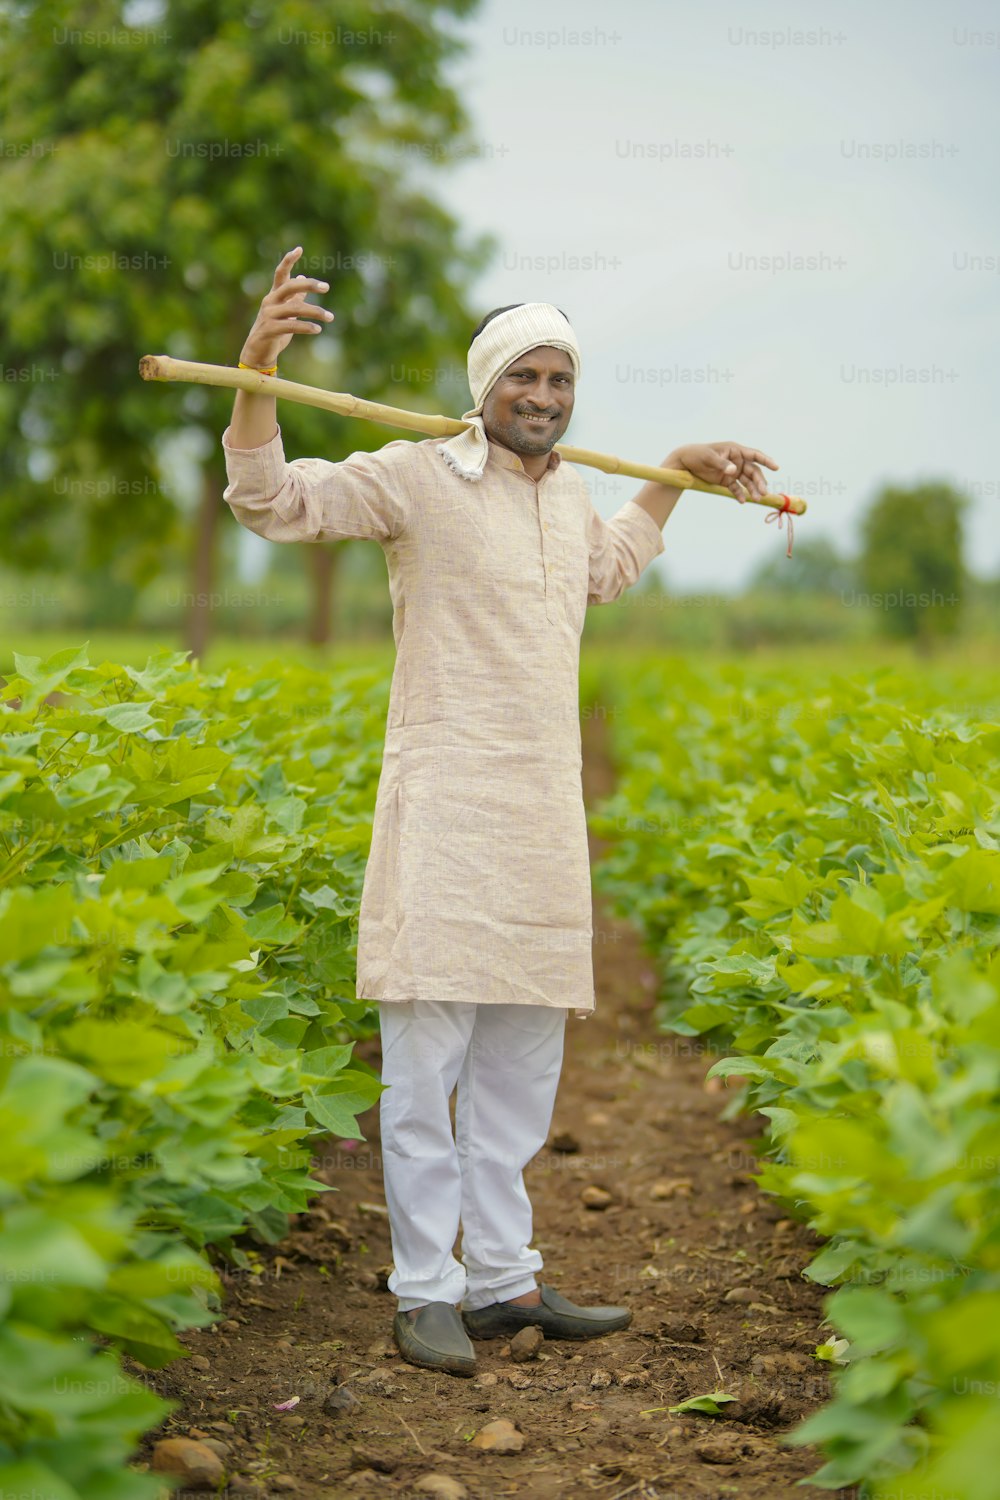 Giovane agricoltore indiano in piedi nel campo agricolo del cotone.